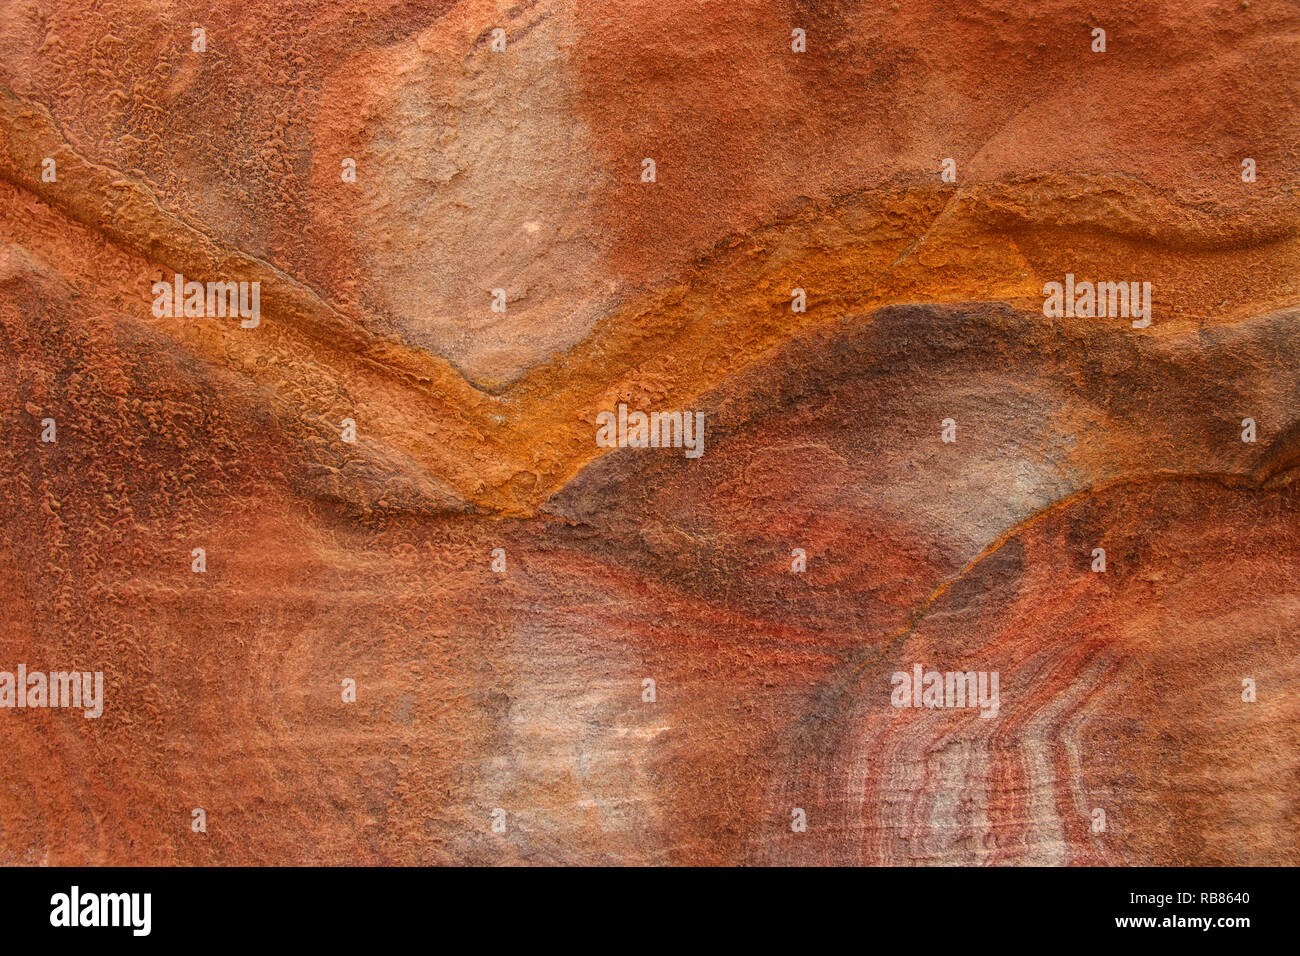 Abstract pattern colorati forra di arenaria Siq,Città Rosa, Petra, Giordania. Rosso pareti del canyon creare molti abstracts. Foto Stock